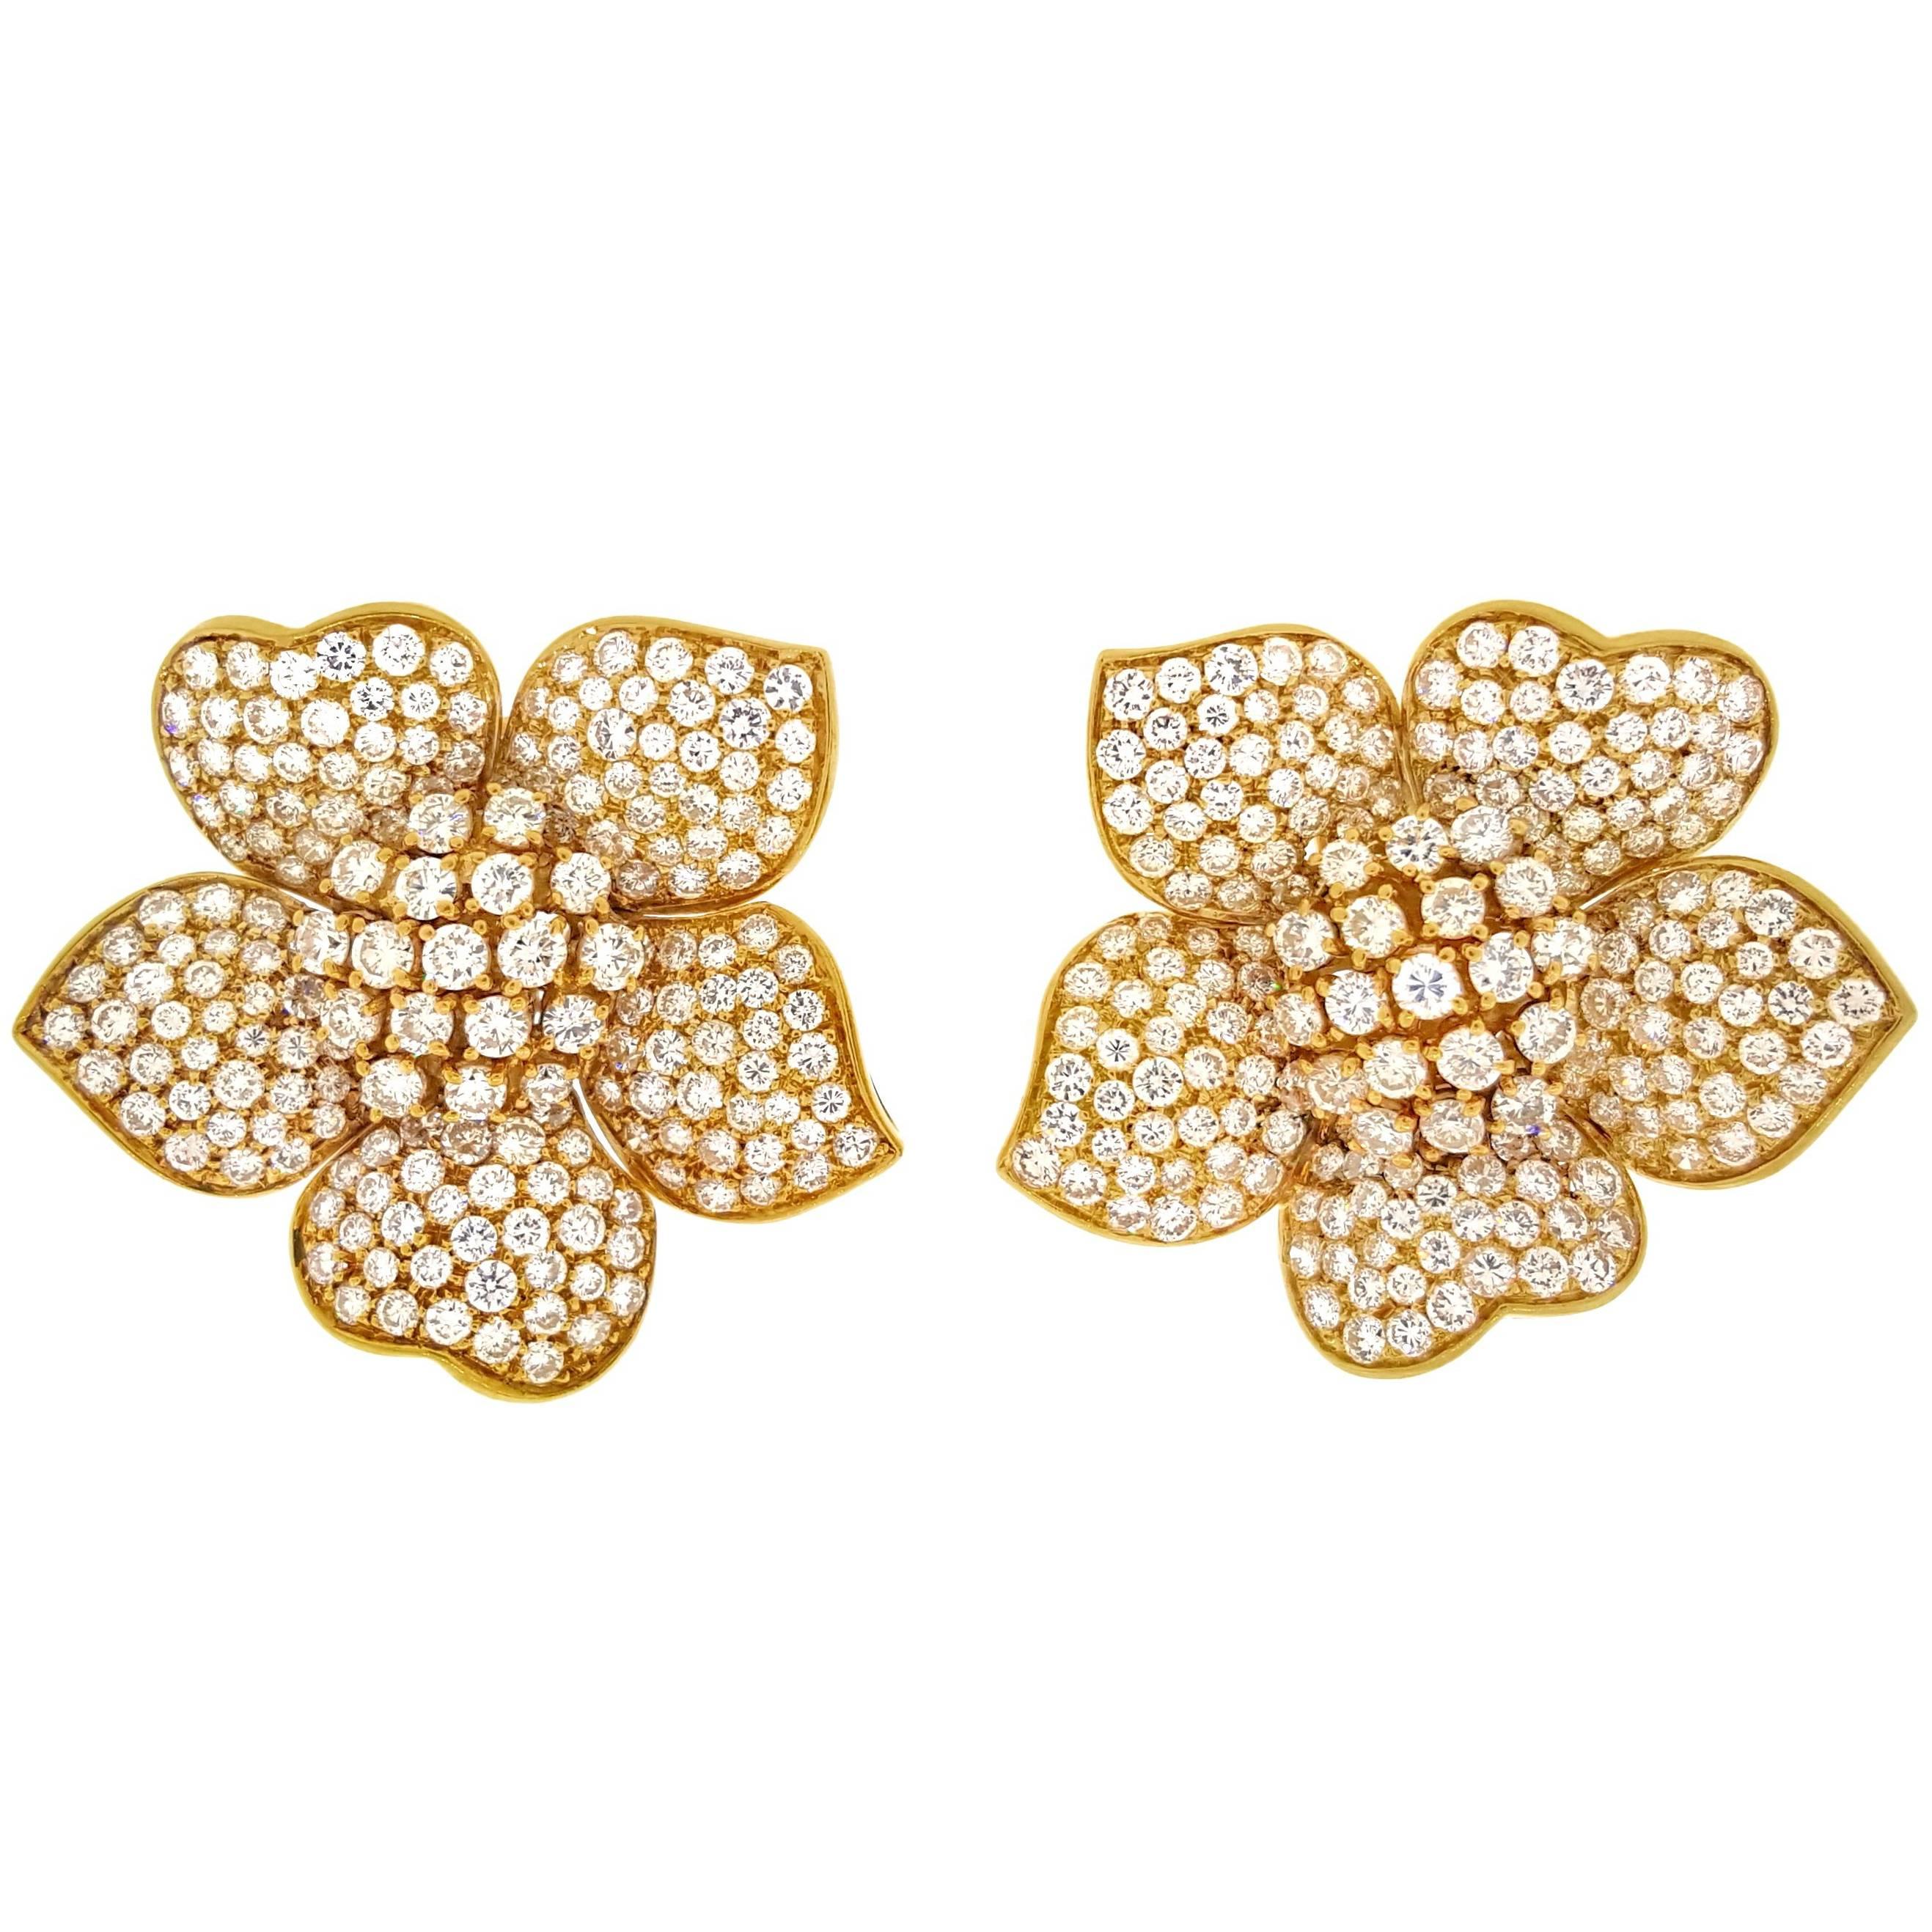 Estate Large Pave Diamond Flower Earrings 7.50 Carat in 18 Karat Yellow Gold